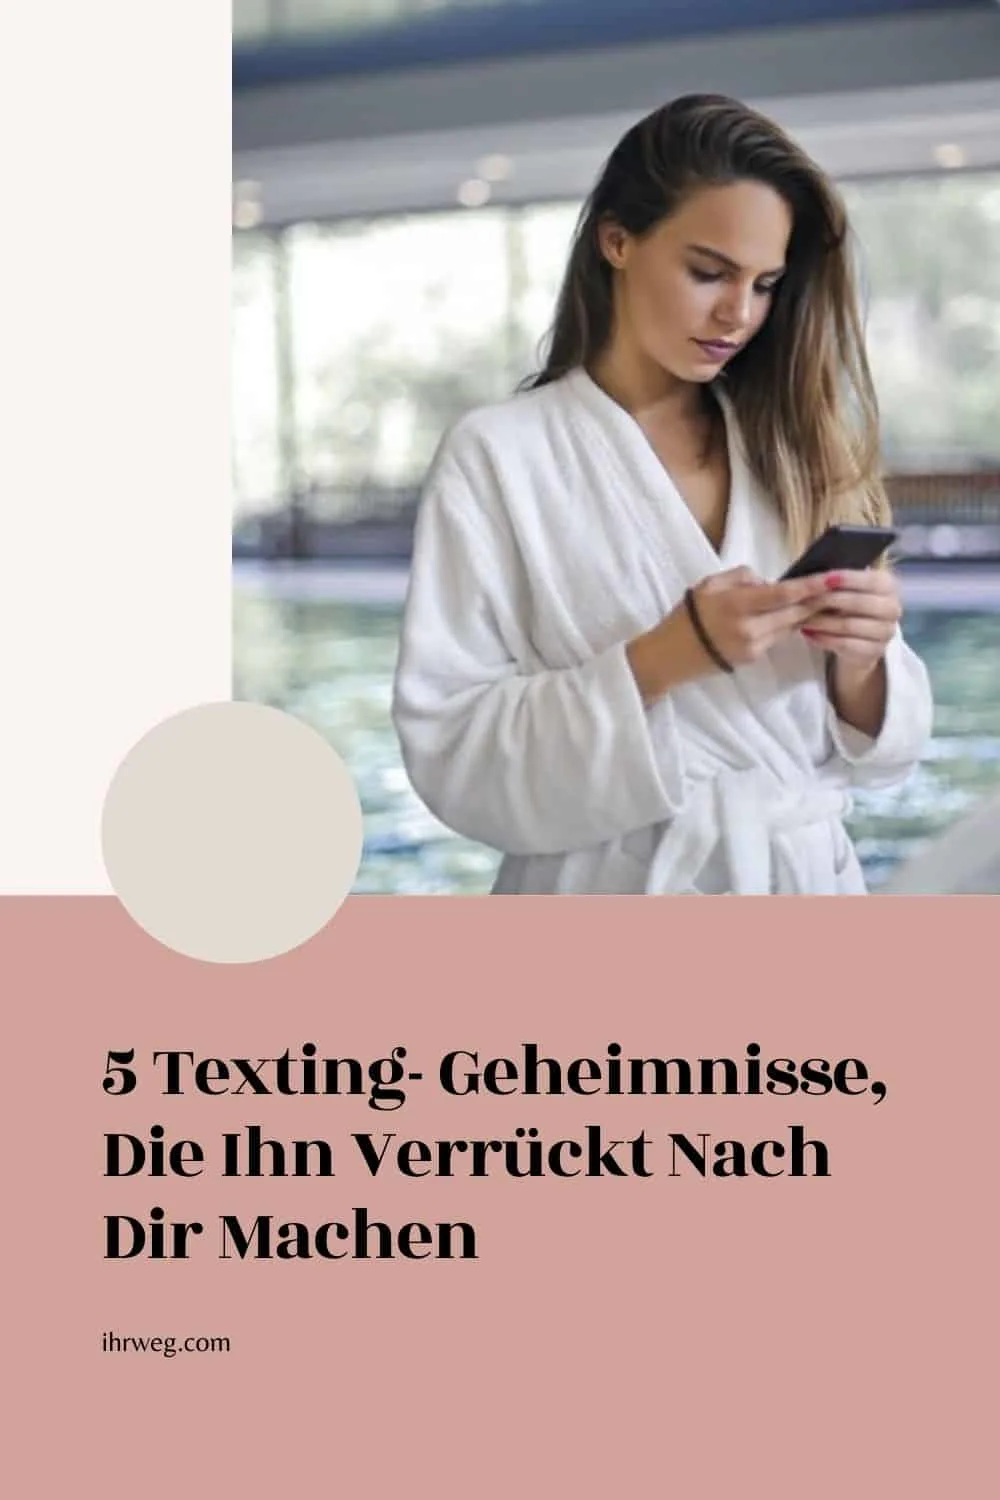 5 Texting- Geheimnisse, Die Ihn Verrückt Nach Dir Machen